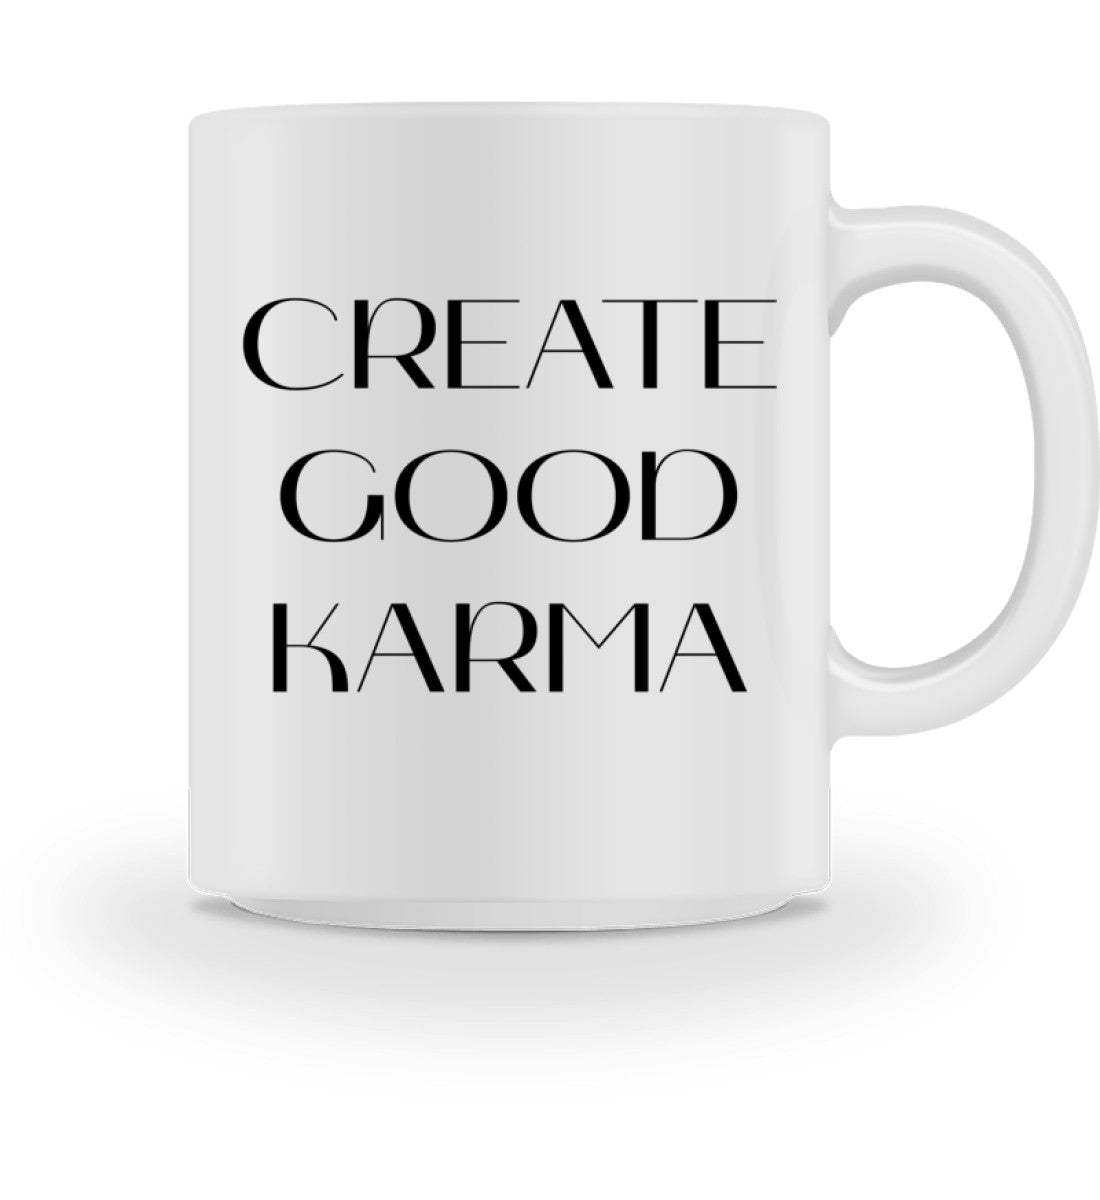 good karma l yoga tasse weiß l tasse l schöne geschenkideen l ökologische geschenke nachhaltig einkaufen